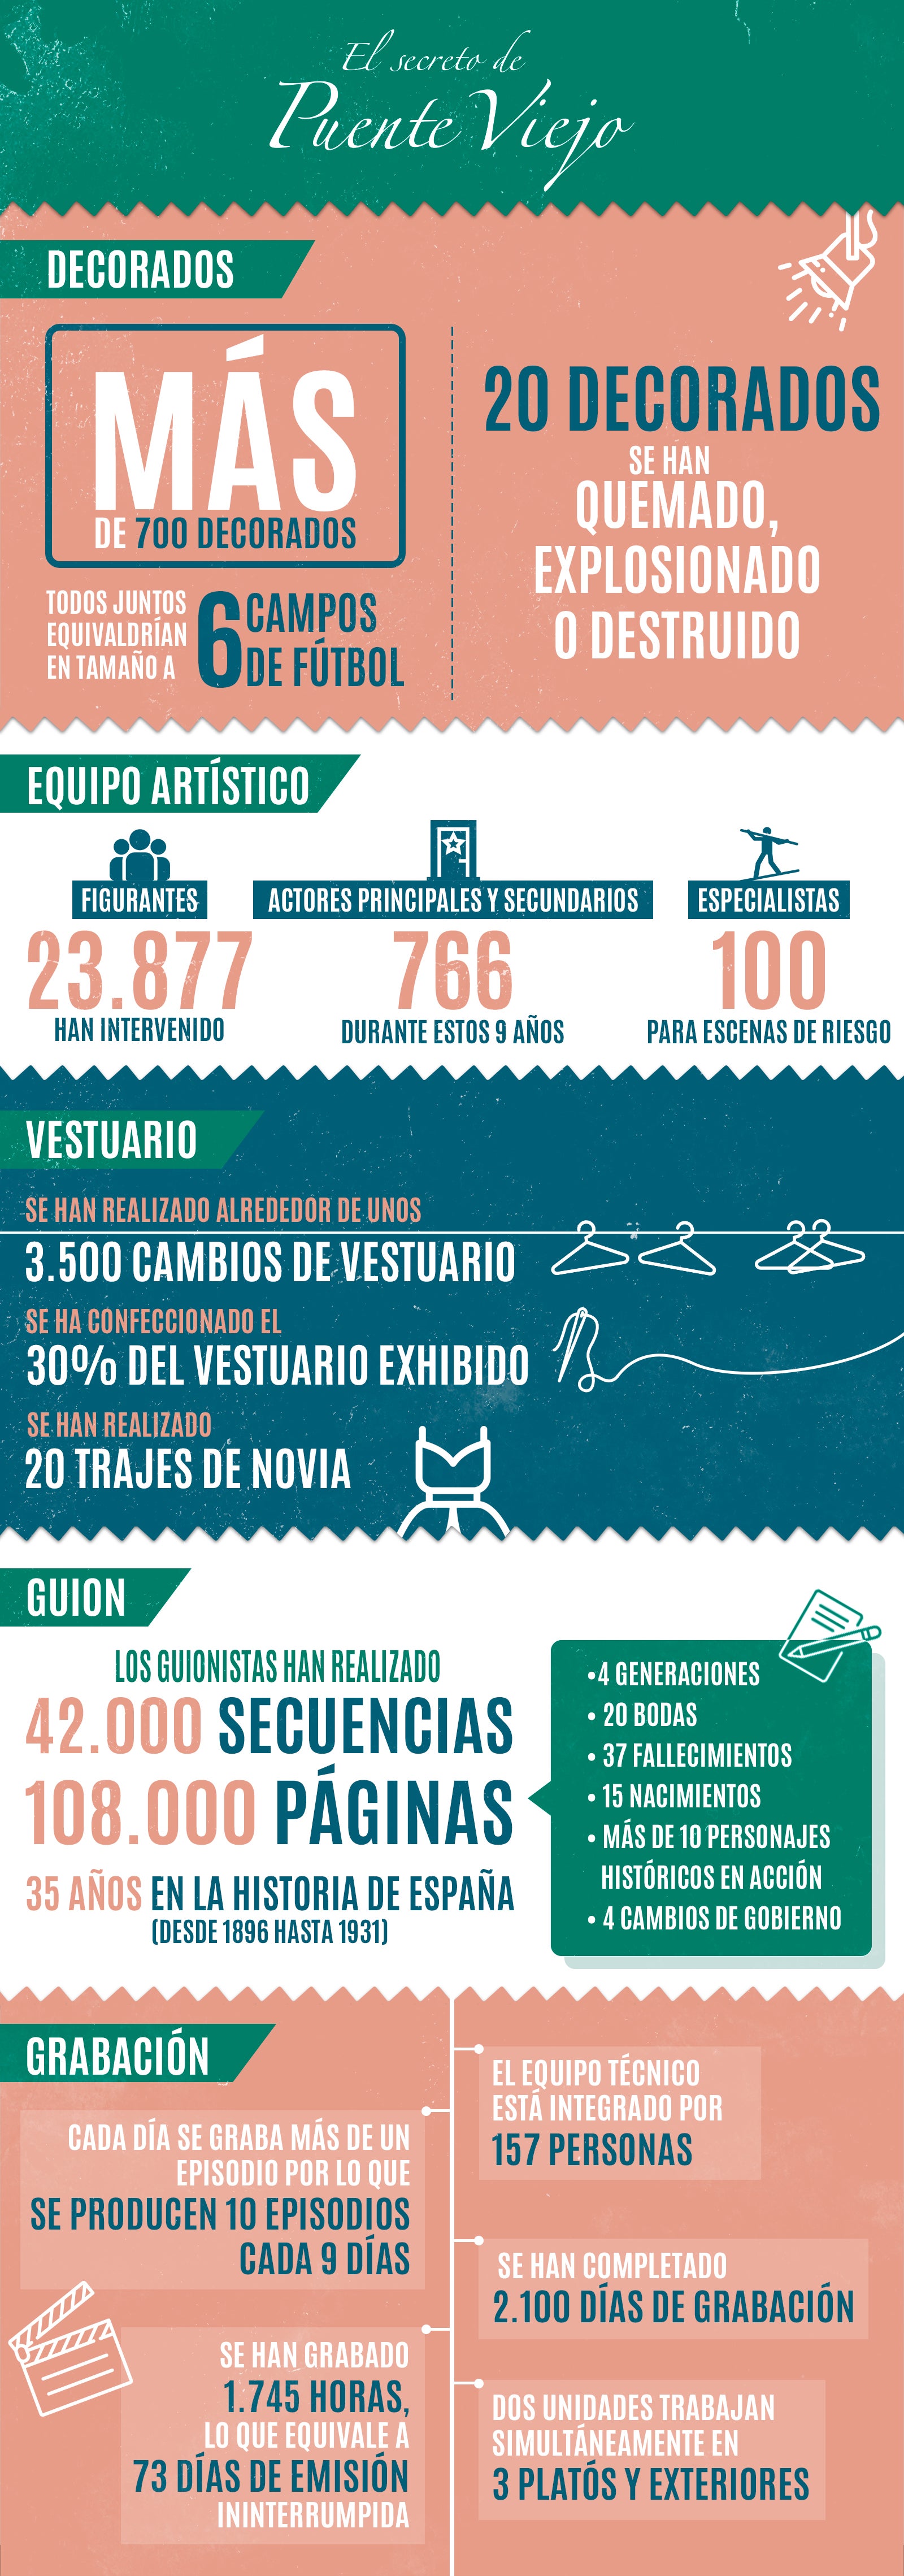 Infografía El secreto de Puente Viejo